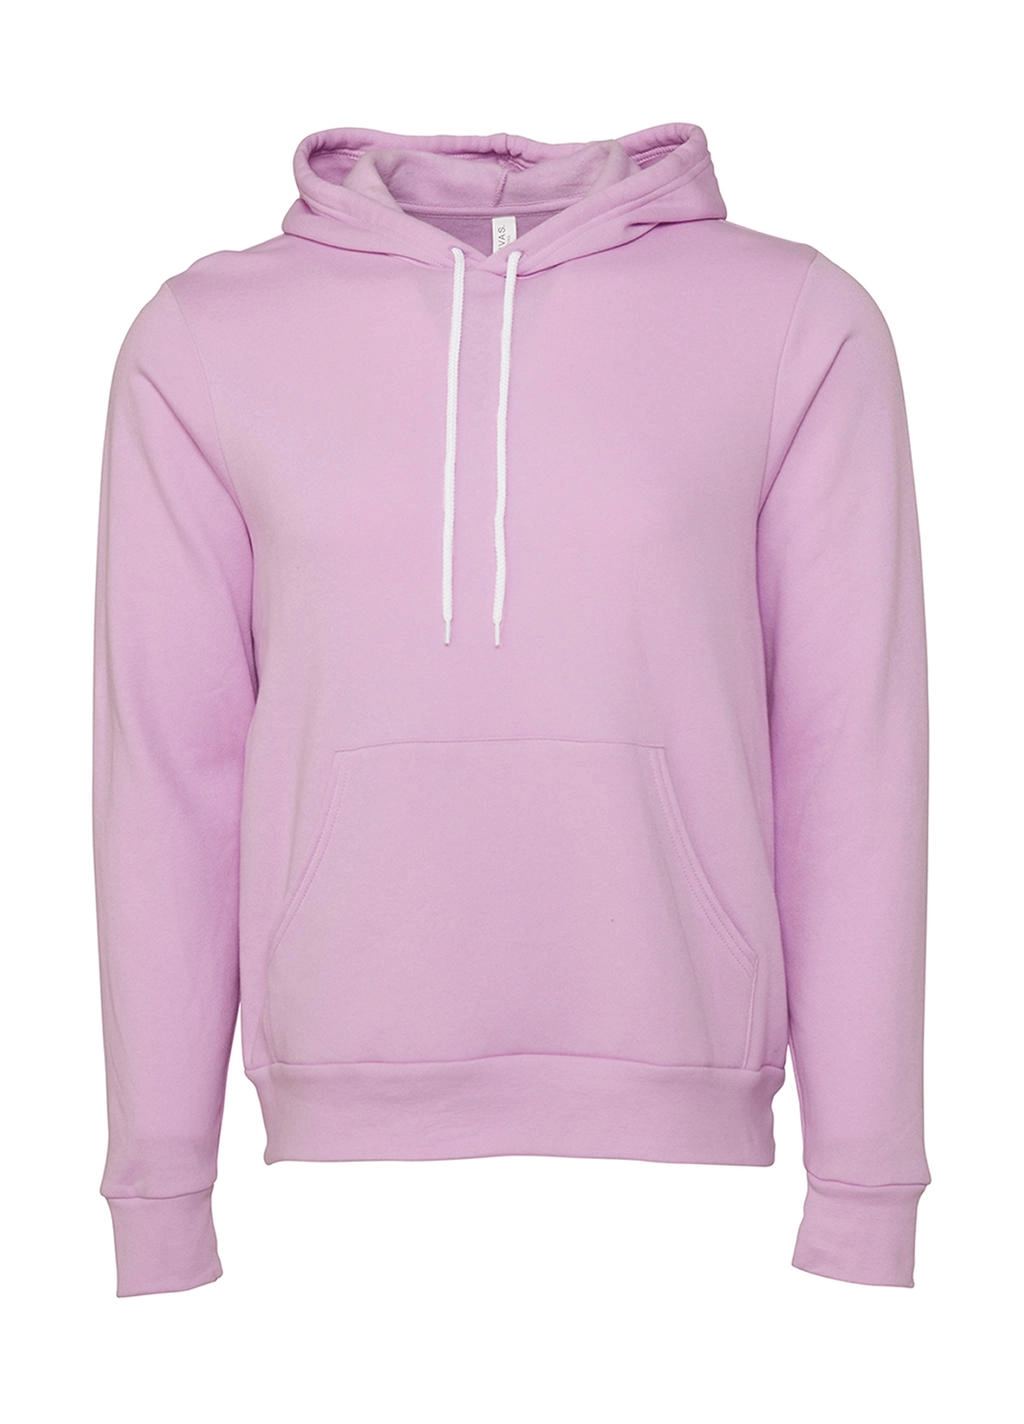 Unisex Poly-Cotton Pullover Hoodie zum Besticken und Bedrucken in der Farbe Lilac mit Ihren Logo, Schriftzug oder Motiv.